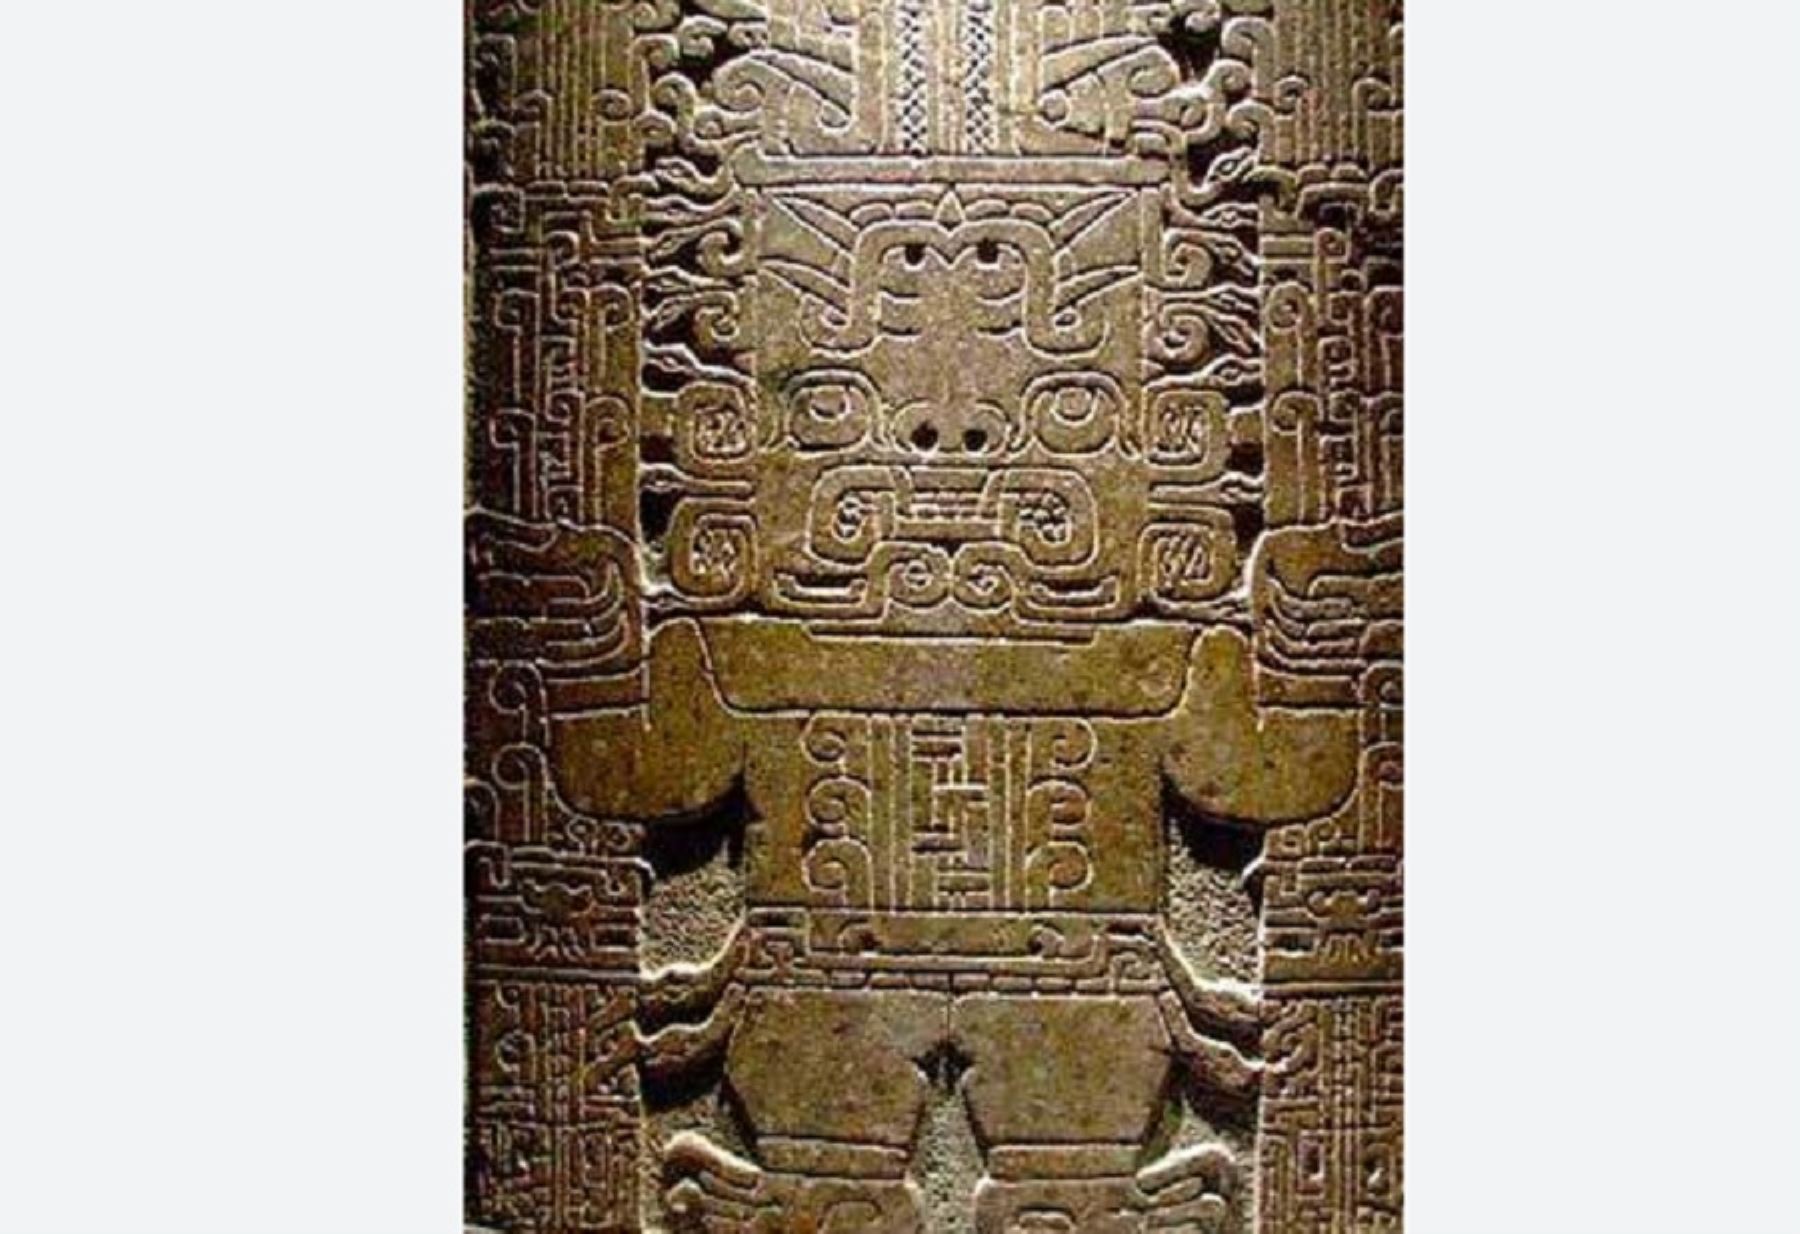 una losa rectangular de granito cuyas dimensiones son: 1.98 metros de alto por 74 centímetros de ancho y 15 centímetros de grosor. En una de sus caras tiene grabada en bajo relieve la representación del llamado “dios de los báculos”, divinidad principal de la cultura Chavín.